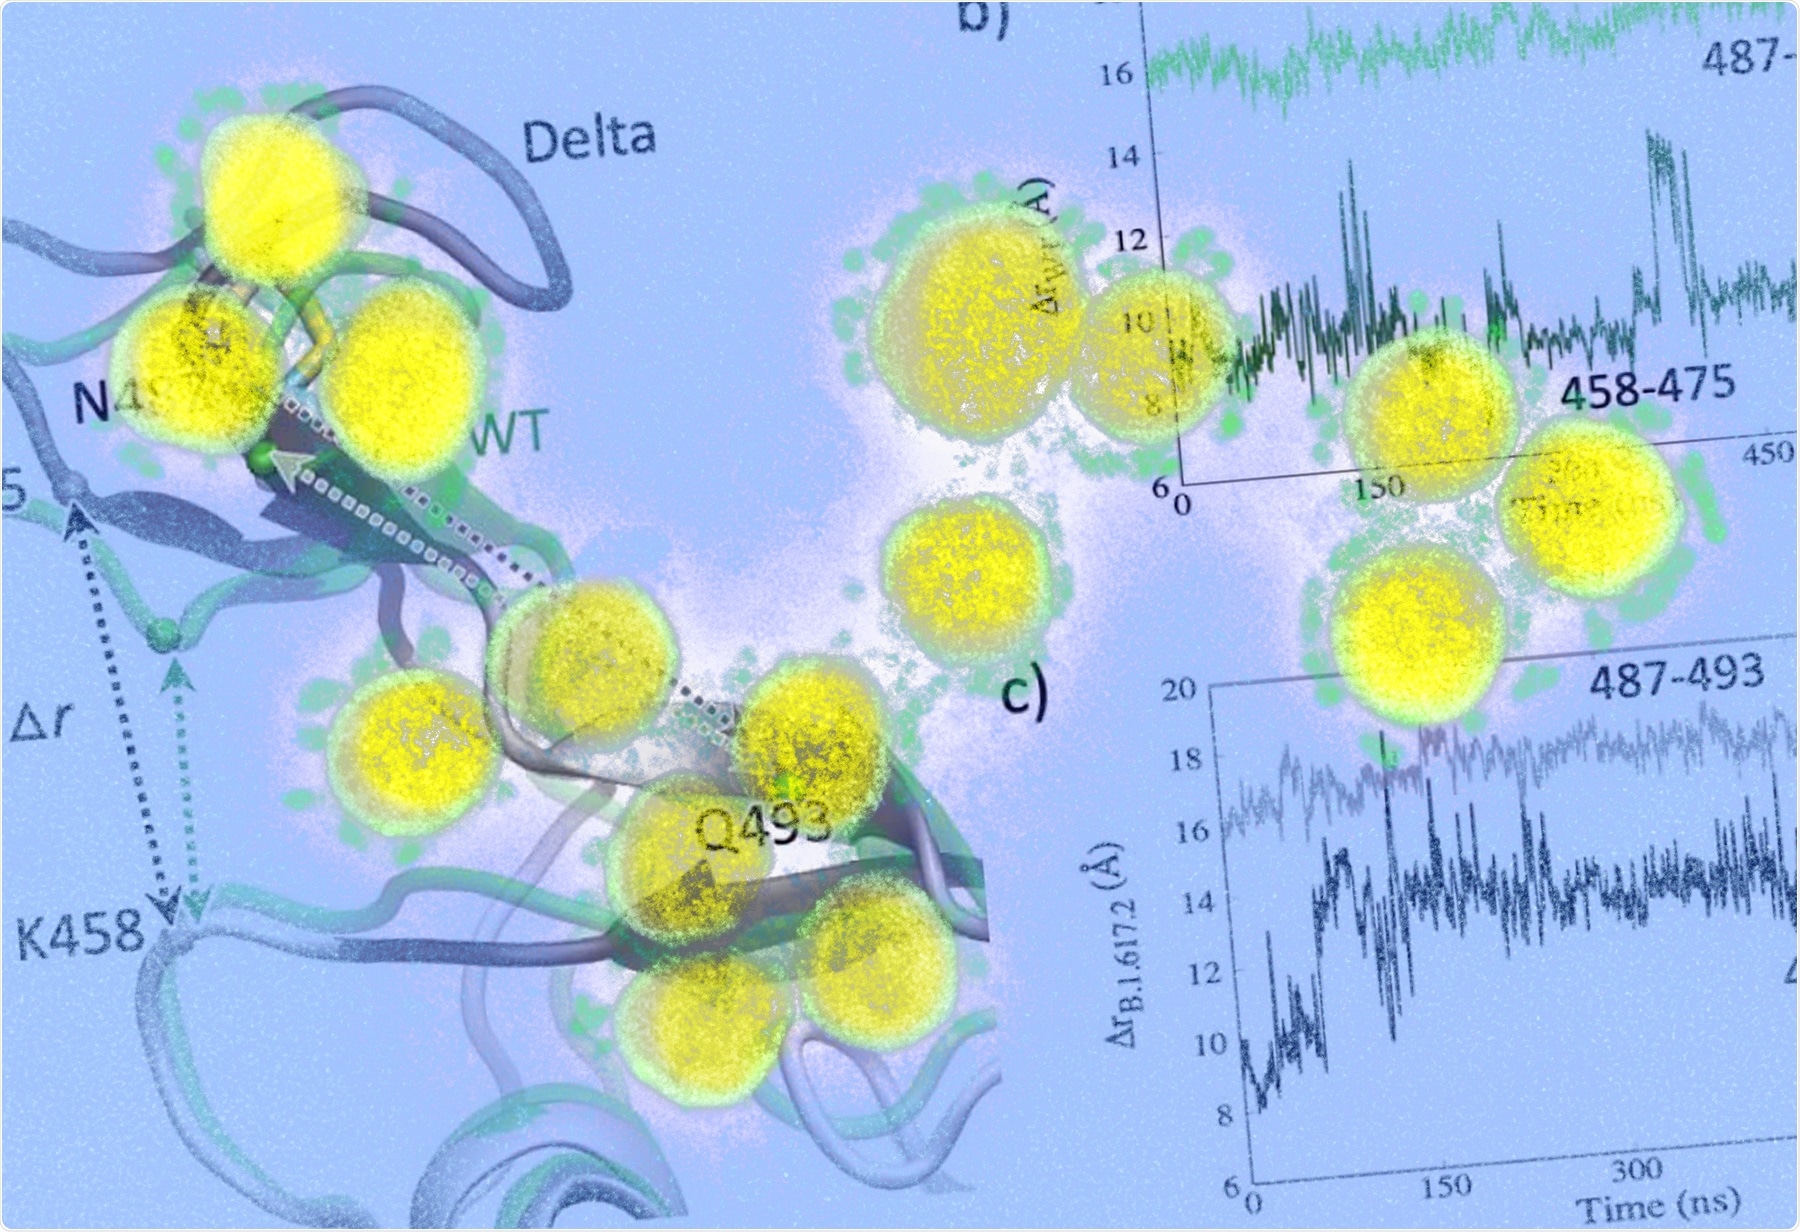 Los cambios estructurales en la interfaz de unión al receptor pueden inducir la aptitud inmunitaria de la variante delta del SARS-CoV-2